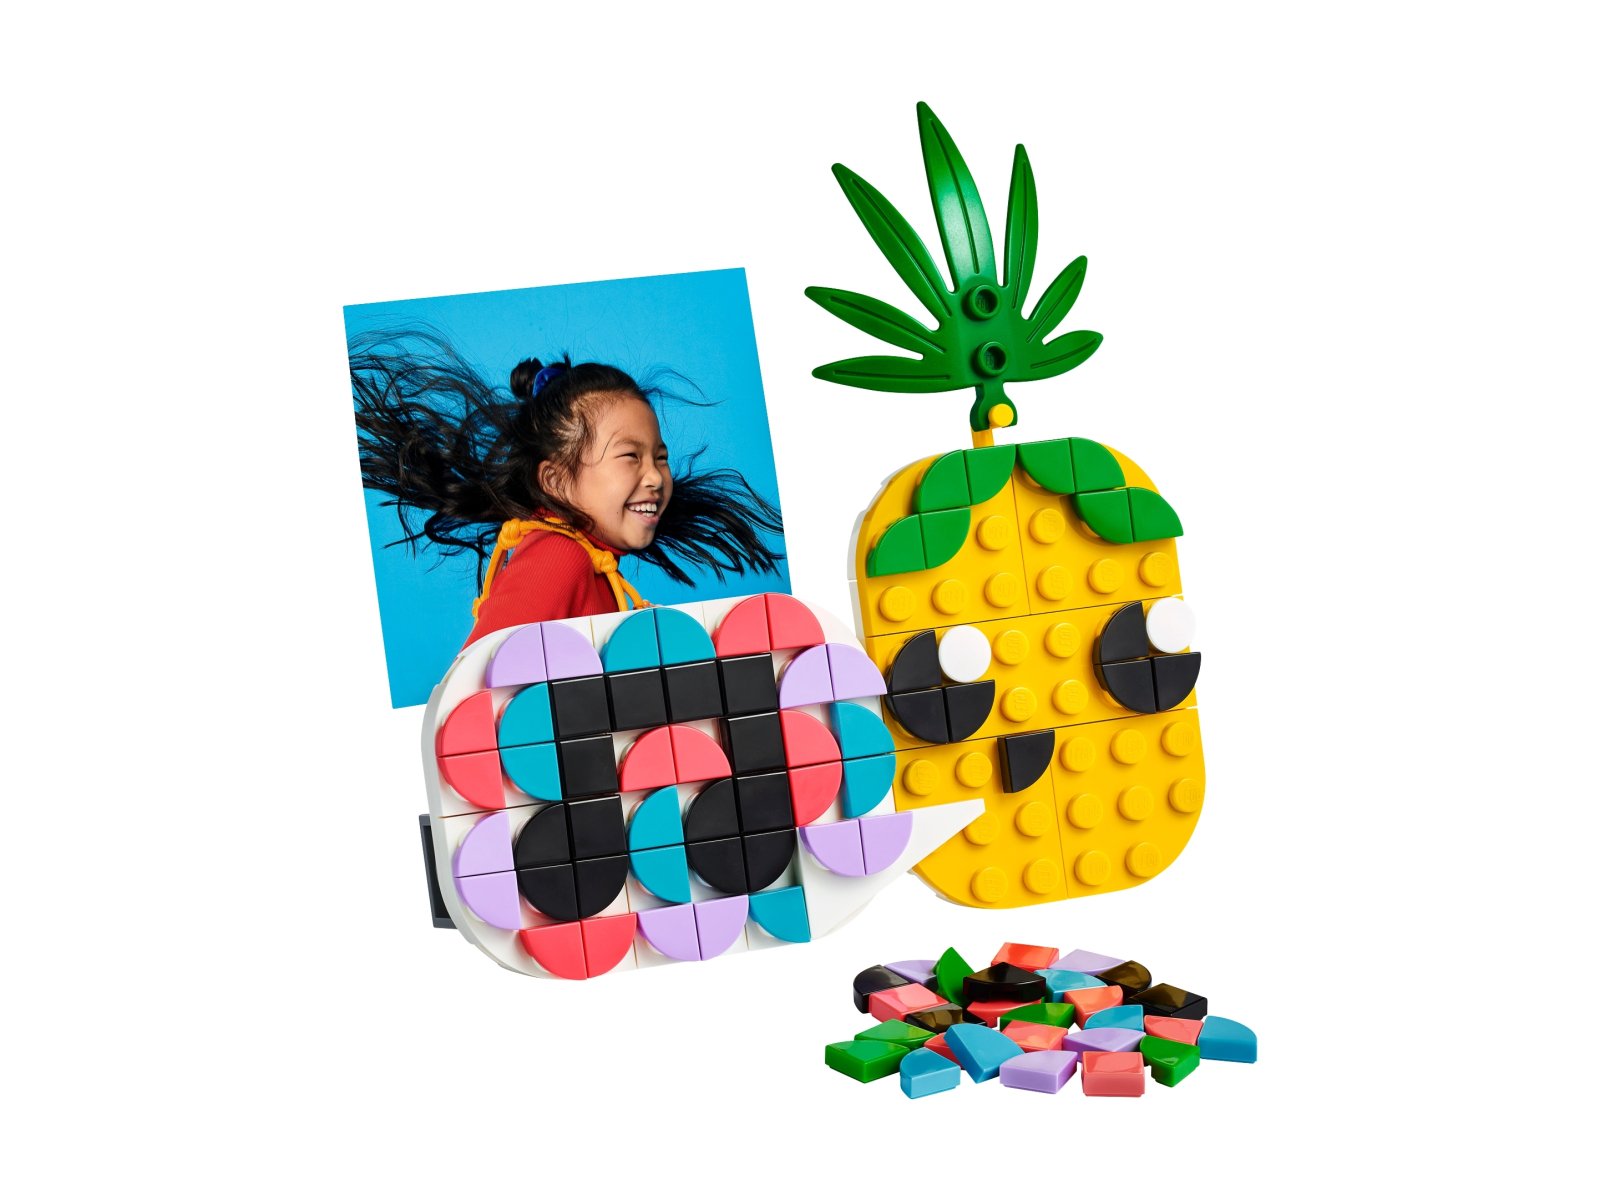 LEGO DOTS Ananas - ramka na zdjęcie i miniaturowa tablica 30560